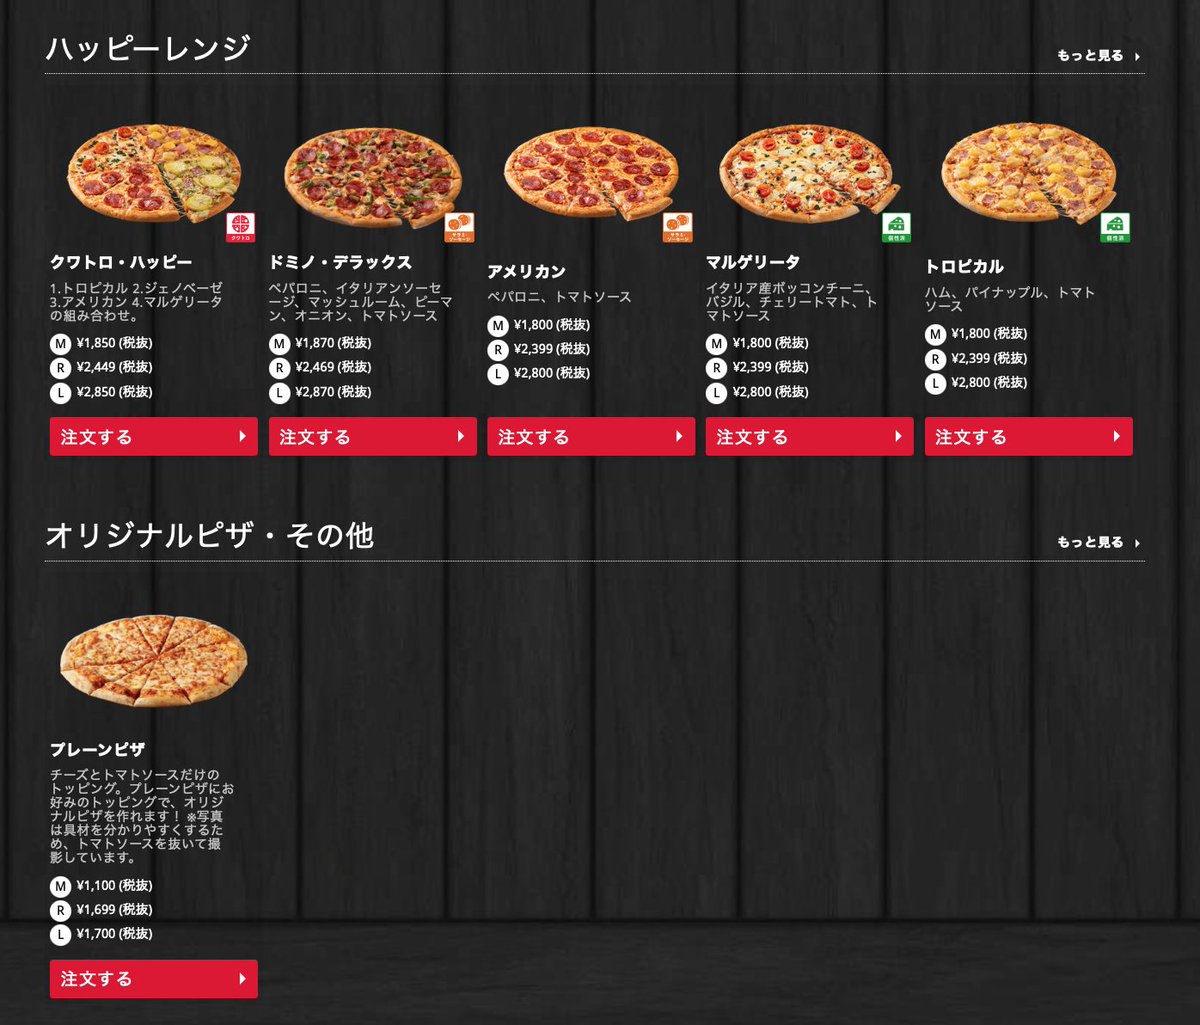 あきな わたしは 私 そもそも1 399円のお一人さまメニュー選んで ピザの選択画面で出てくるのがその金額以上のピザというね 何選んでも値引きされるし 日本の宅配ピザは欧米と比べて高いと言われているけれど 本来であればこの値引き分は利益に